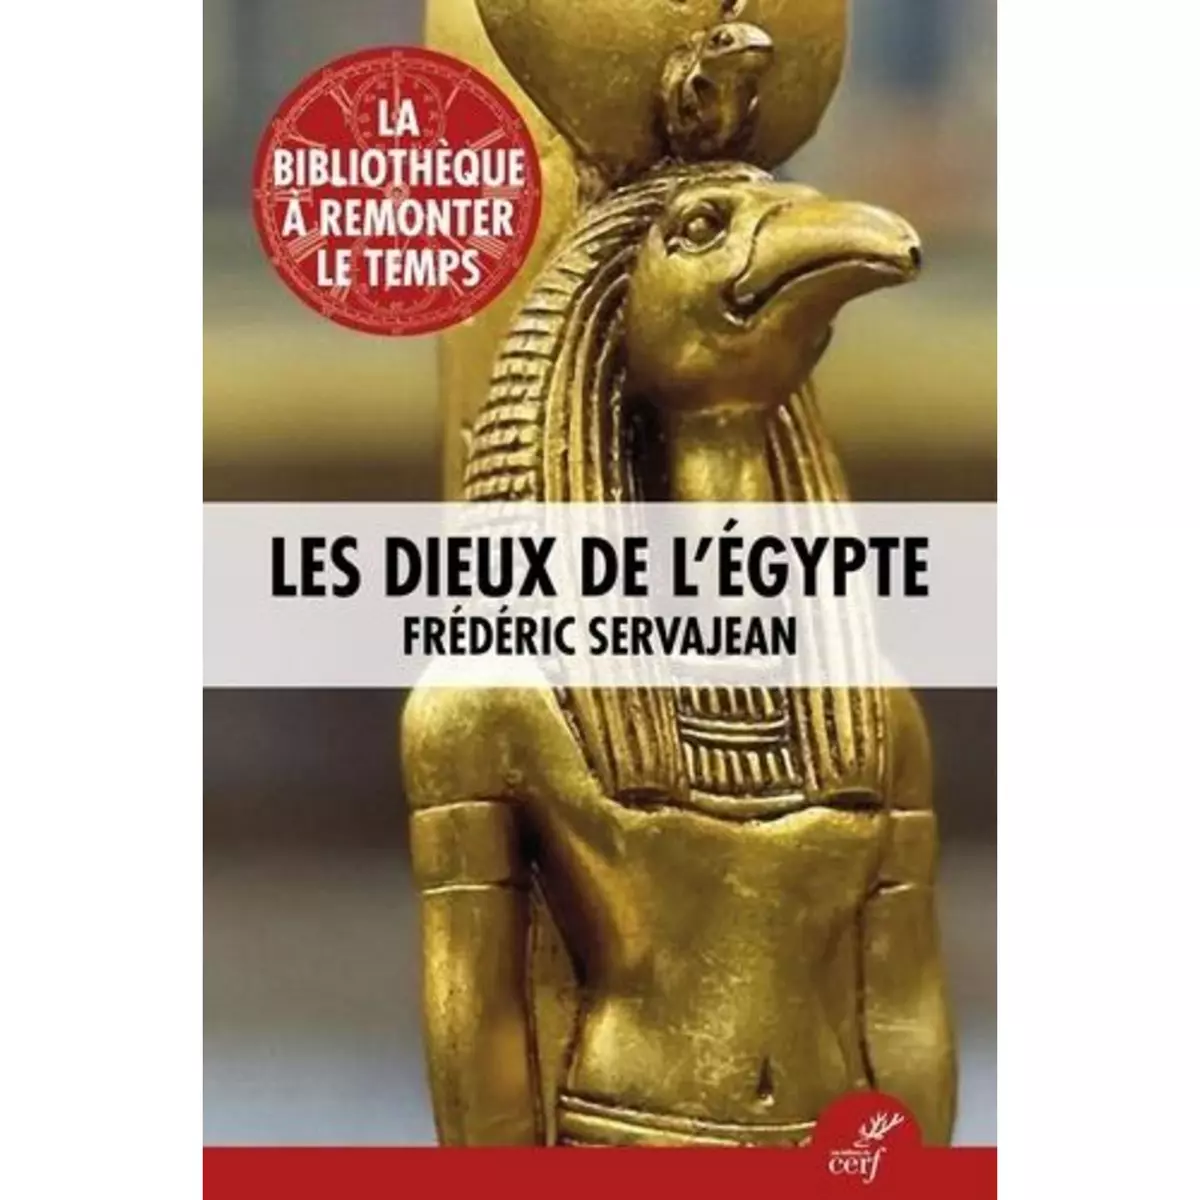  LES DIEUX DE L'EGYPTE, Servajean Frédéric